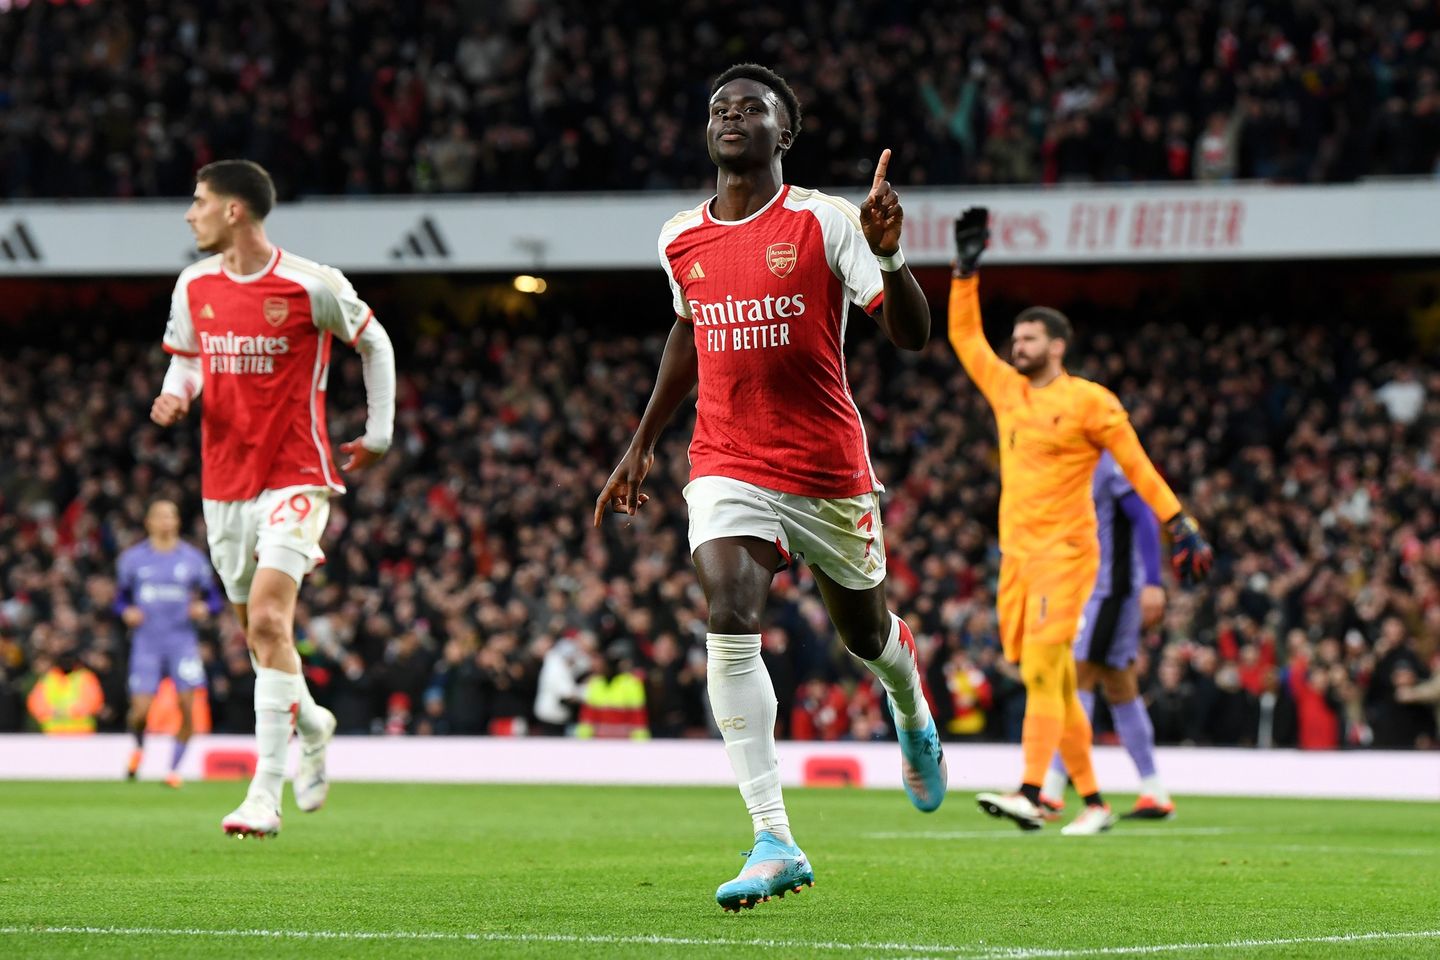 TRỰC TIẾP Arsenal 1-0 Liverpool (H1): Saka há điểm mang lại Arsenal - Bóng Đá